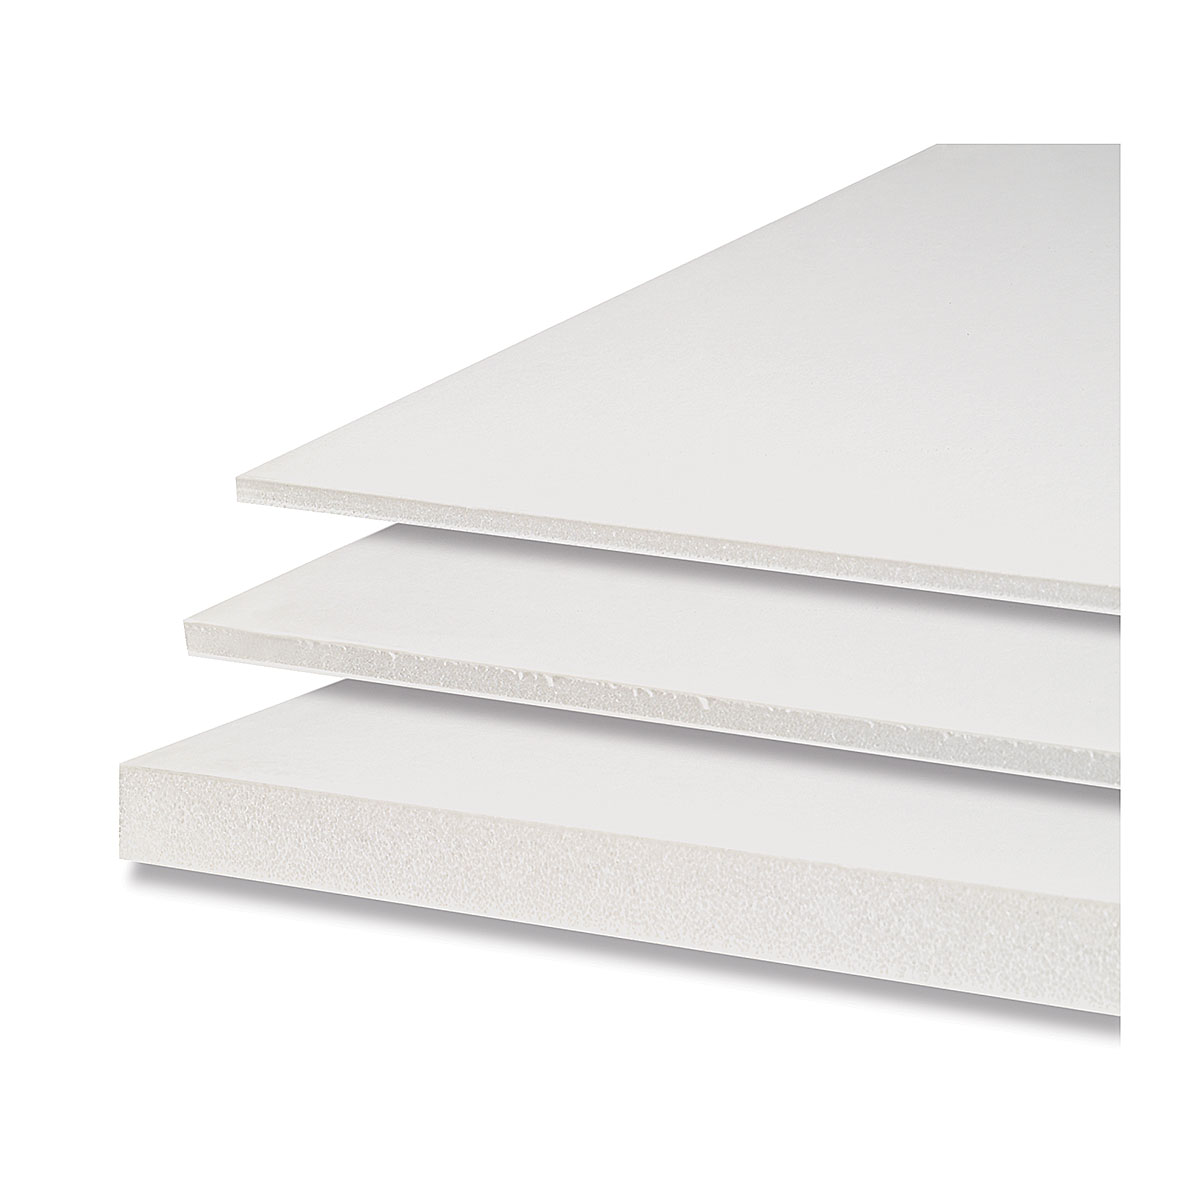 Elmer's Foam Board White 25-Count Package 3/16 x 20 x 30" 